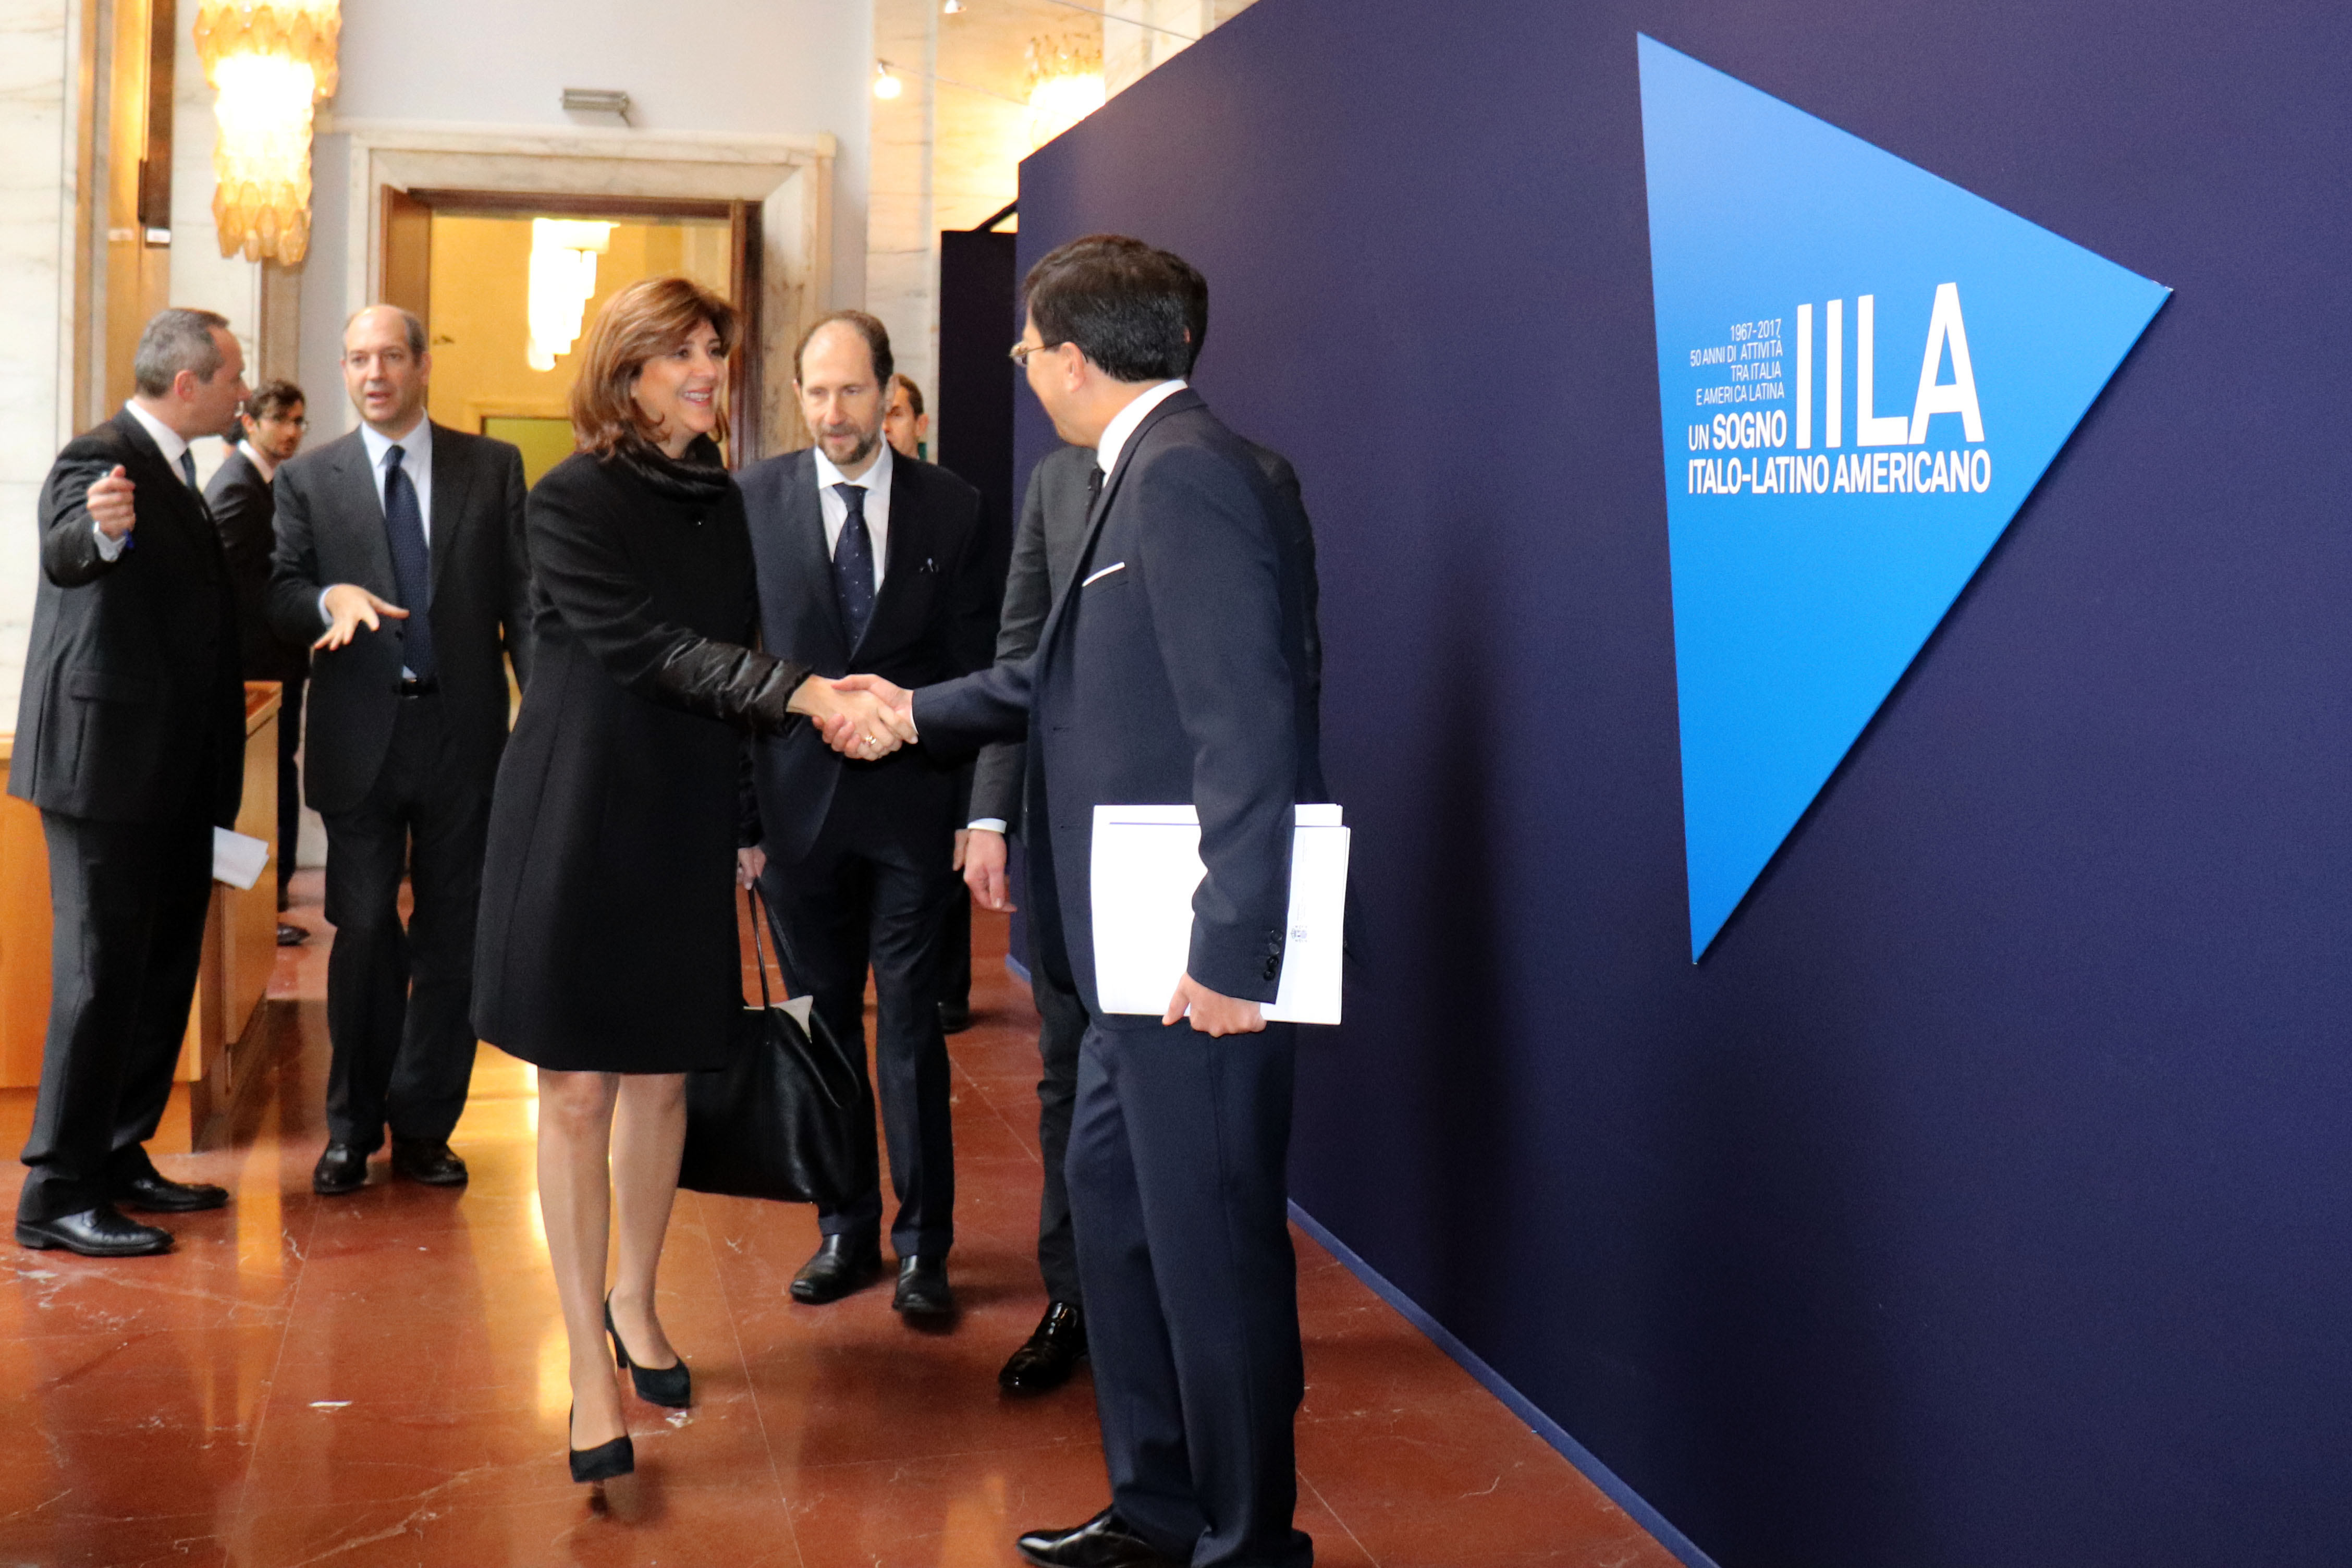 Representantes de gobiernos latinoamericanos, entre ellos la Canciller María Ángela Holguín, asisten a la VIII Conferencia Italia – América Latina y el Caribe